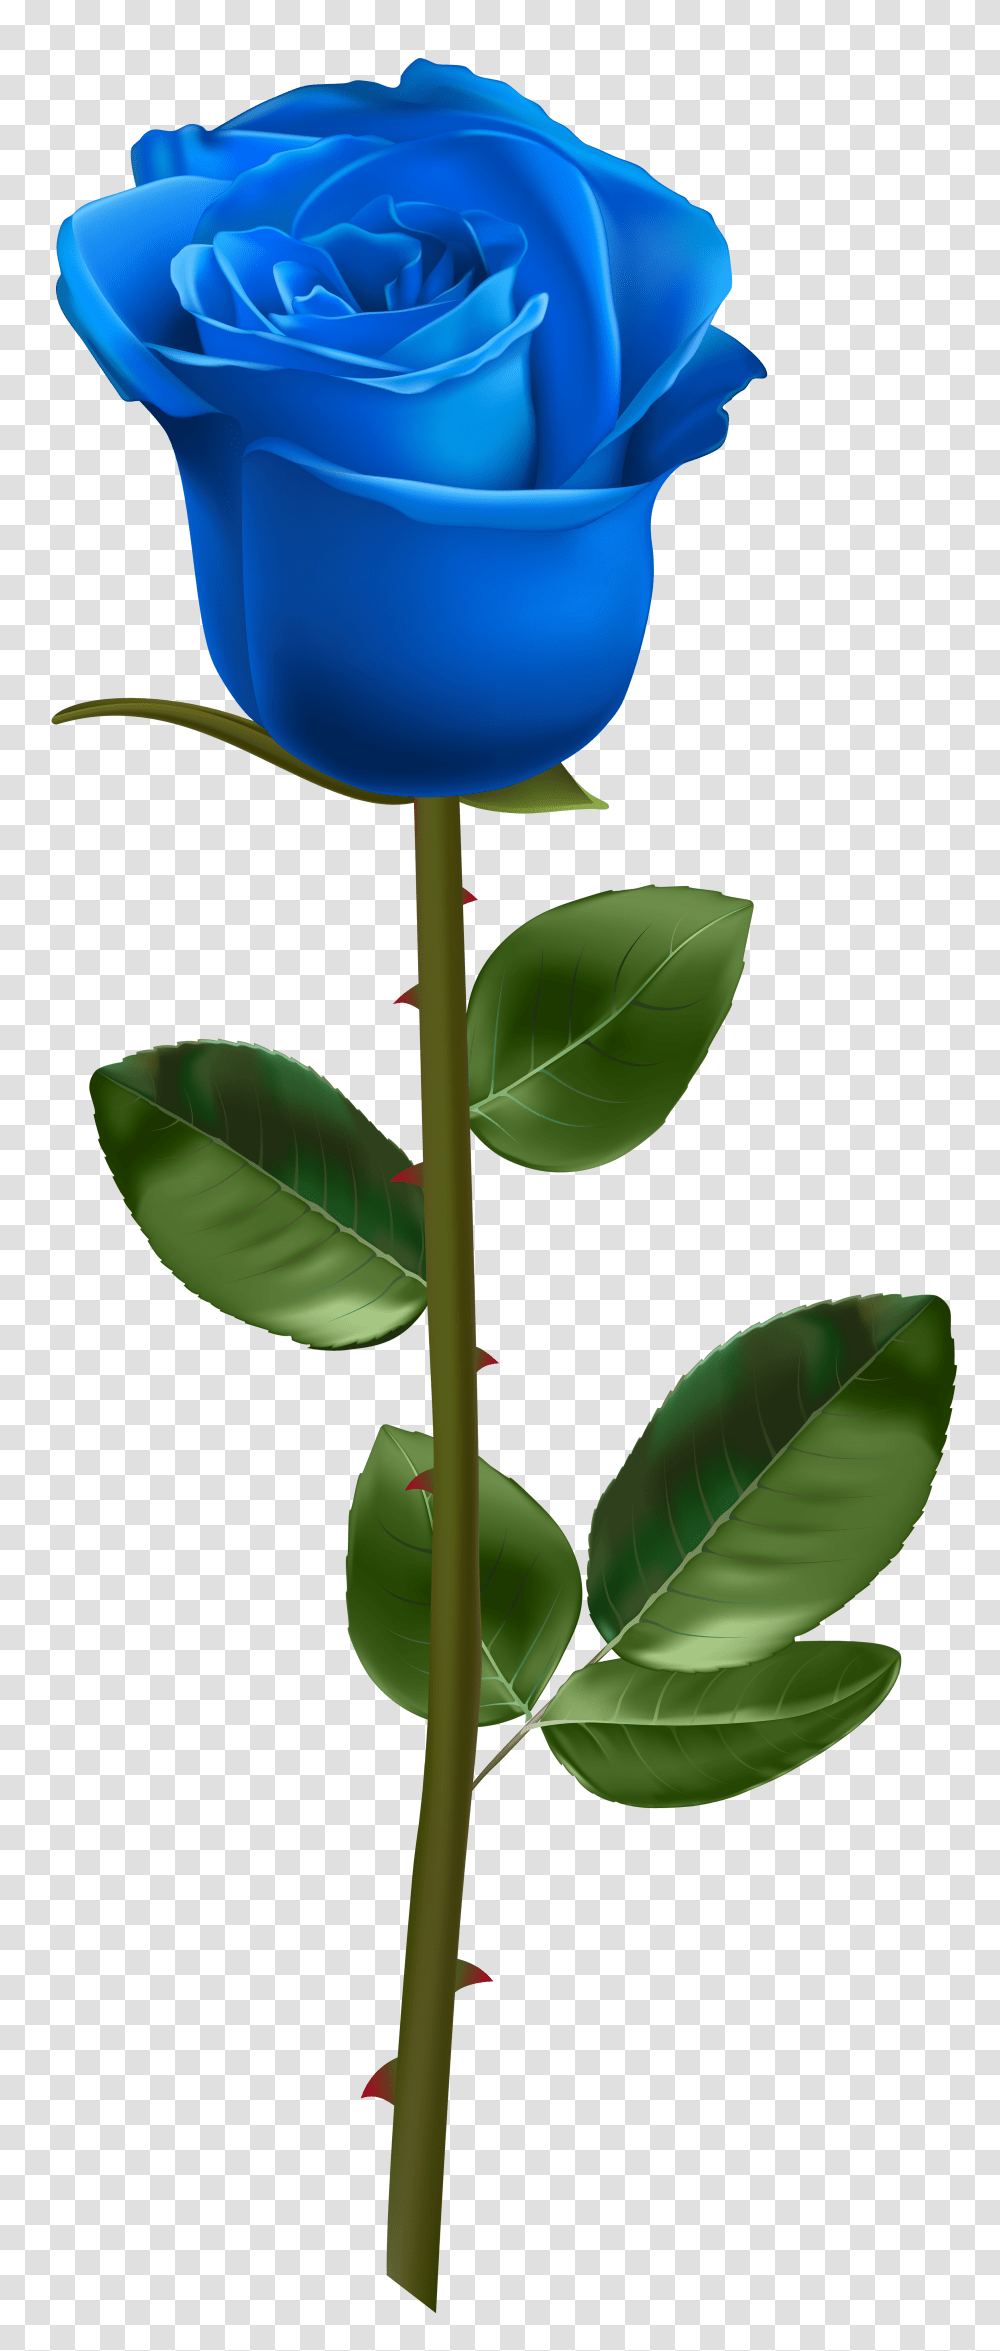 Blue Rose With Stem, Plant, Leaf, Flower, Petal Transparent Png